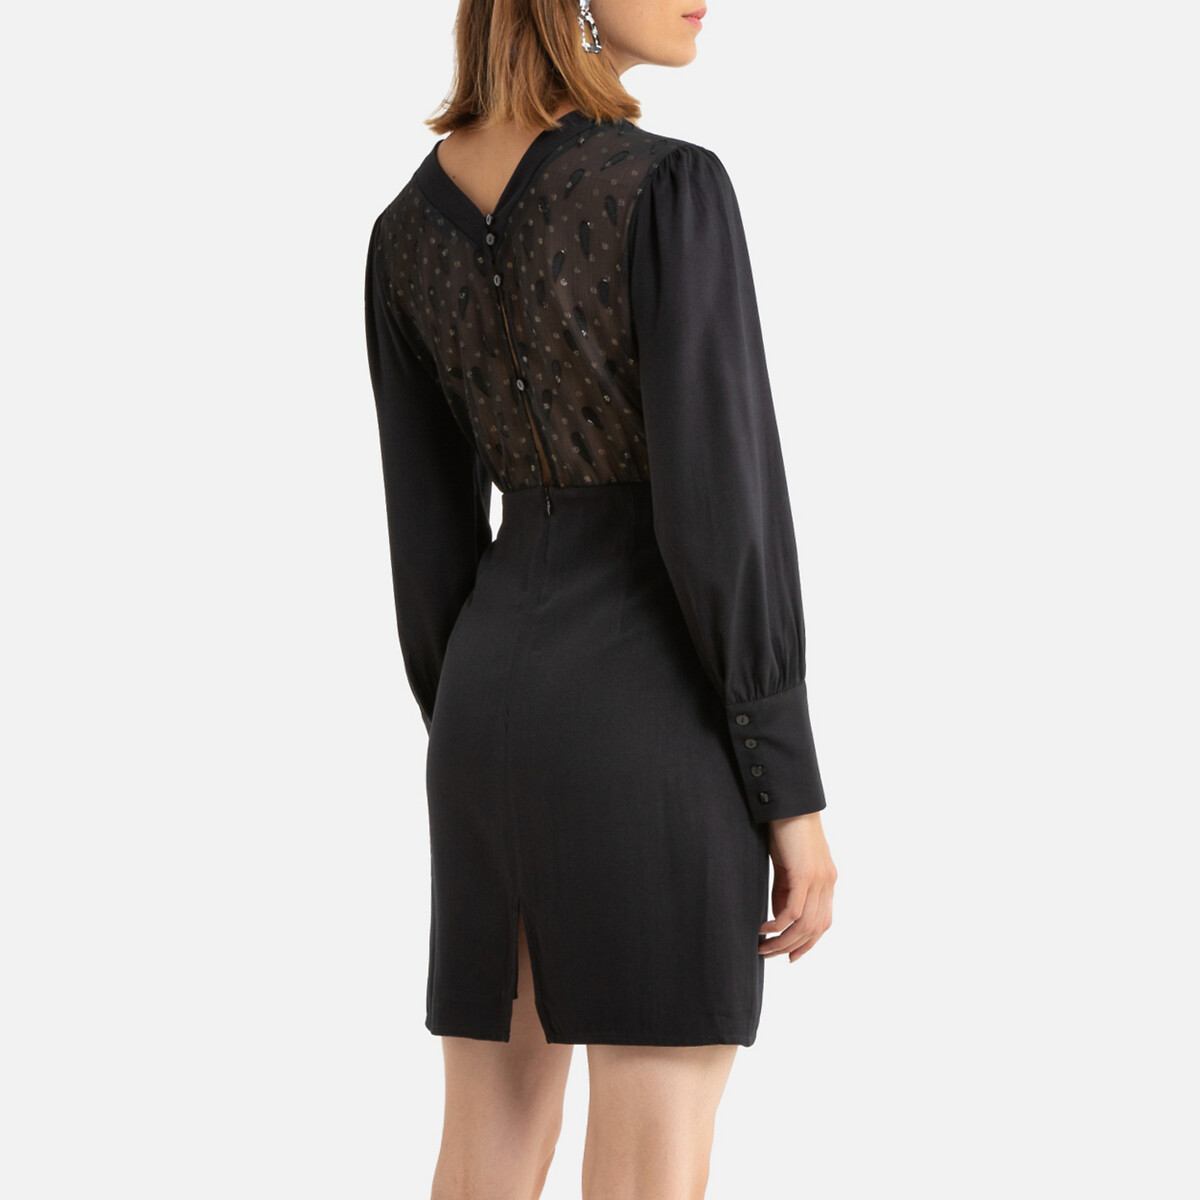 Платье La Redoute Короткое длинные рукава декольте сзади 1(S) черный, размер 1(S) Короткое длинные рукава декольте сзади 1(S) черный - фото 4